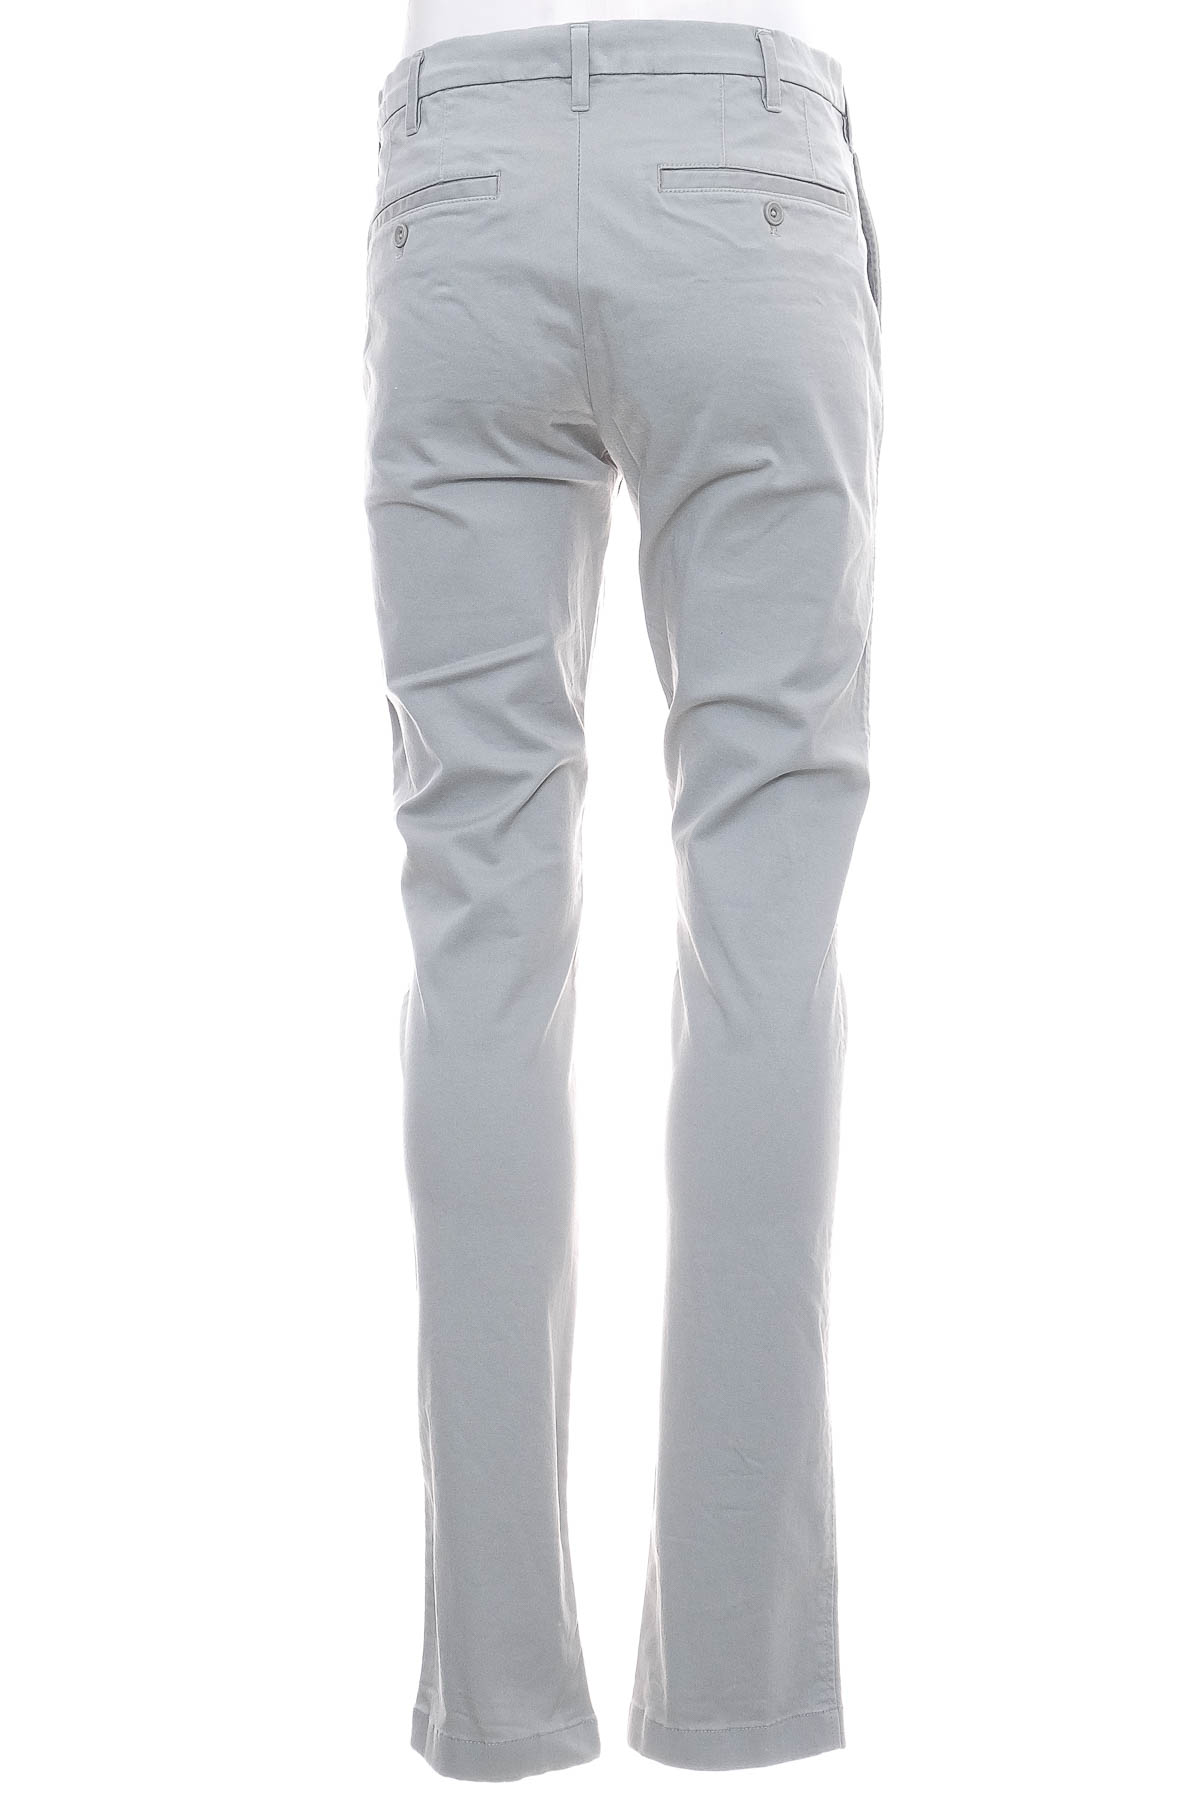 Pantalon pentru bărbați - UNIQLO - 1